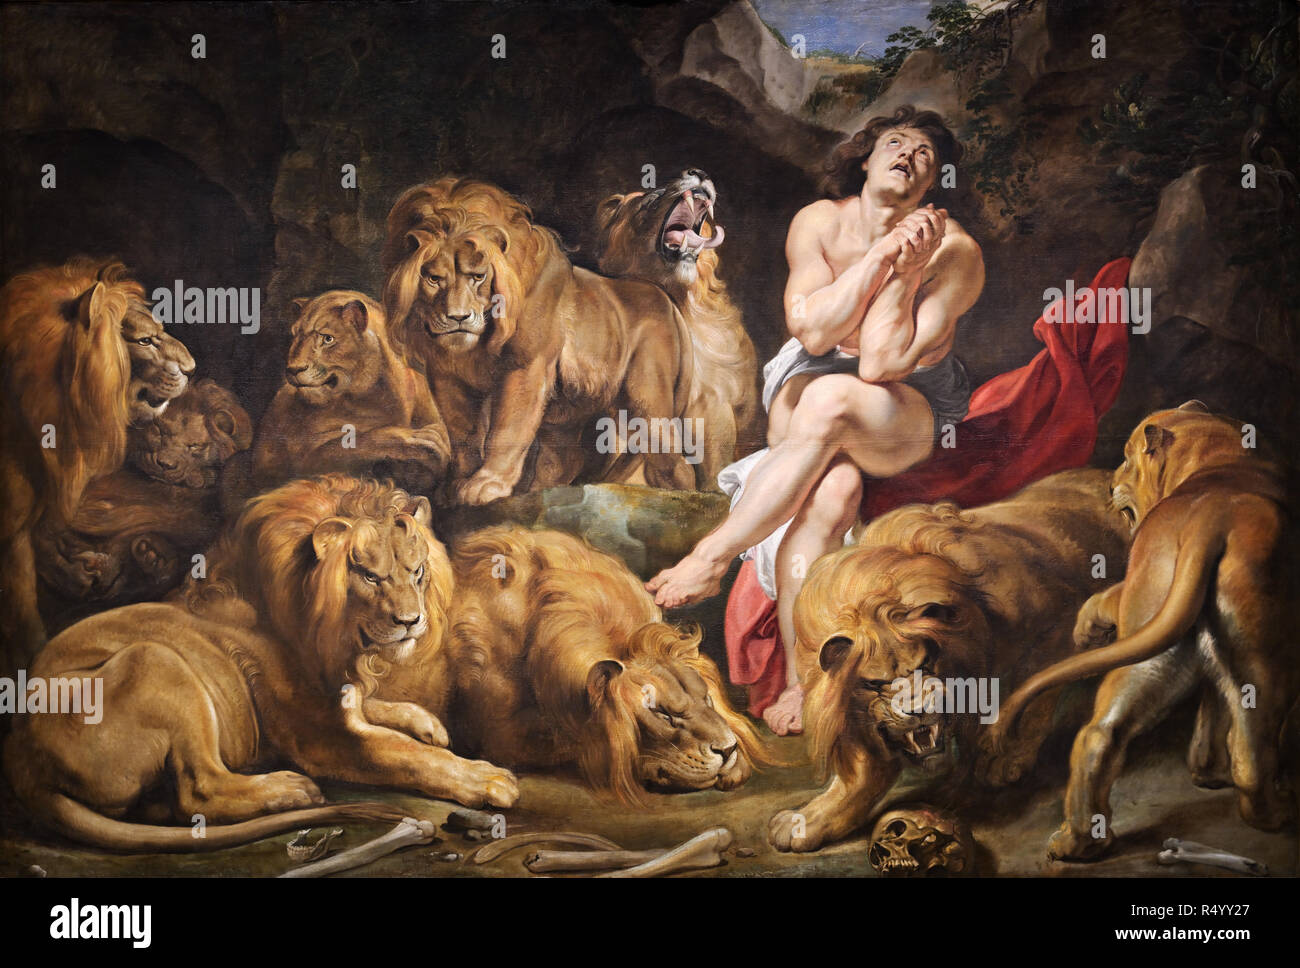 Rubens peinture, Daniel dans la fosse aux lions Den, 1614/1616, Sir Peter Paul Rubens Banque D'Images